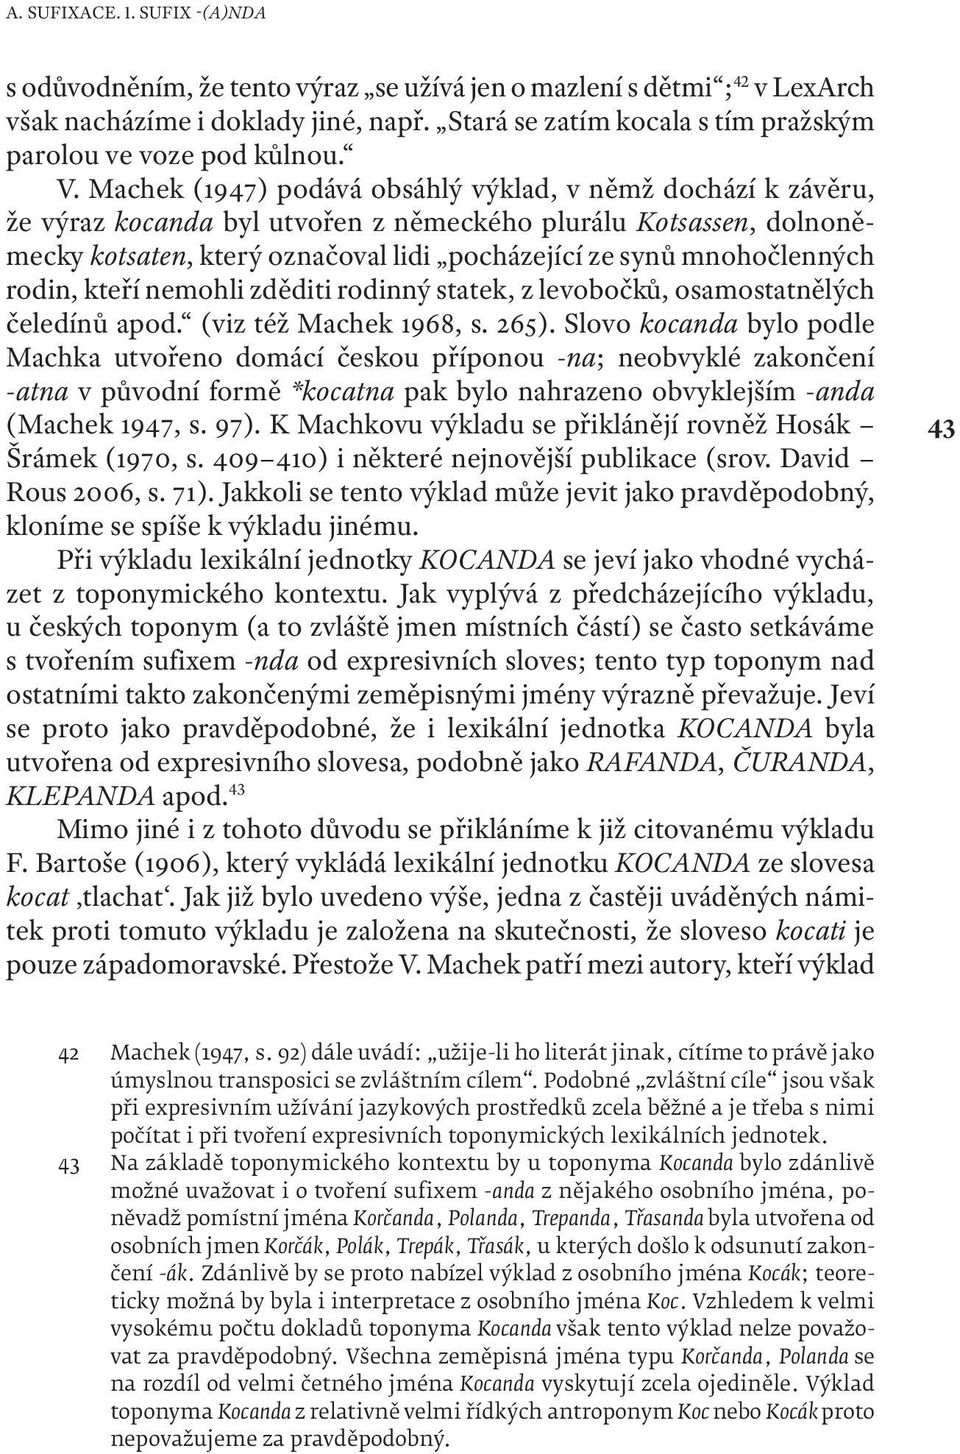 Machek (1947) podává obsáhlý výklad, v němž dochází k závěru, že výraz kocanda byl utvořen z německého plurálu Kotsassen, dolnoněmecky kotsaten, který označoval lidi pocházející ze synů mnohočlenných